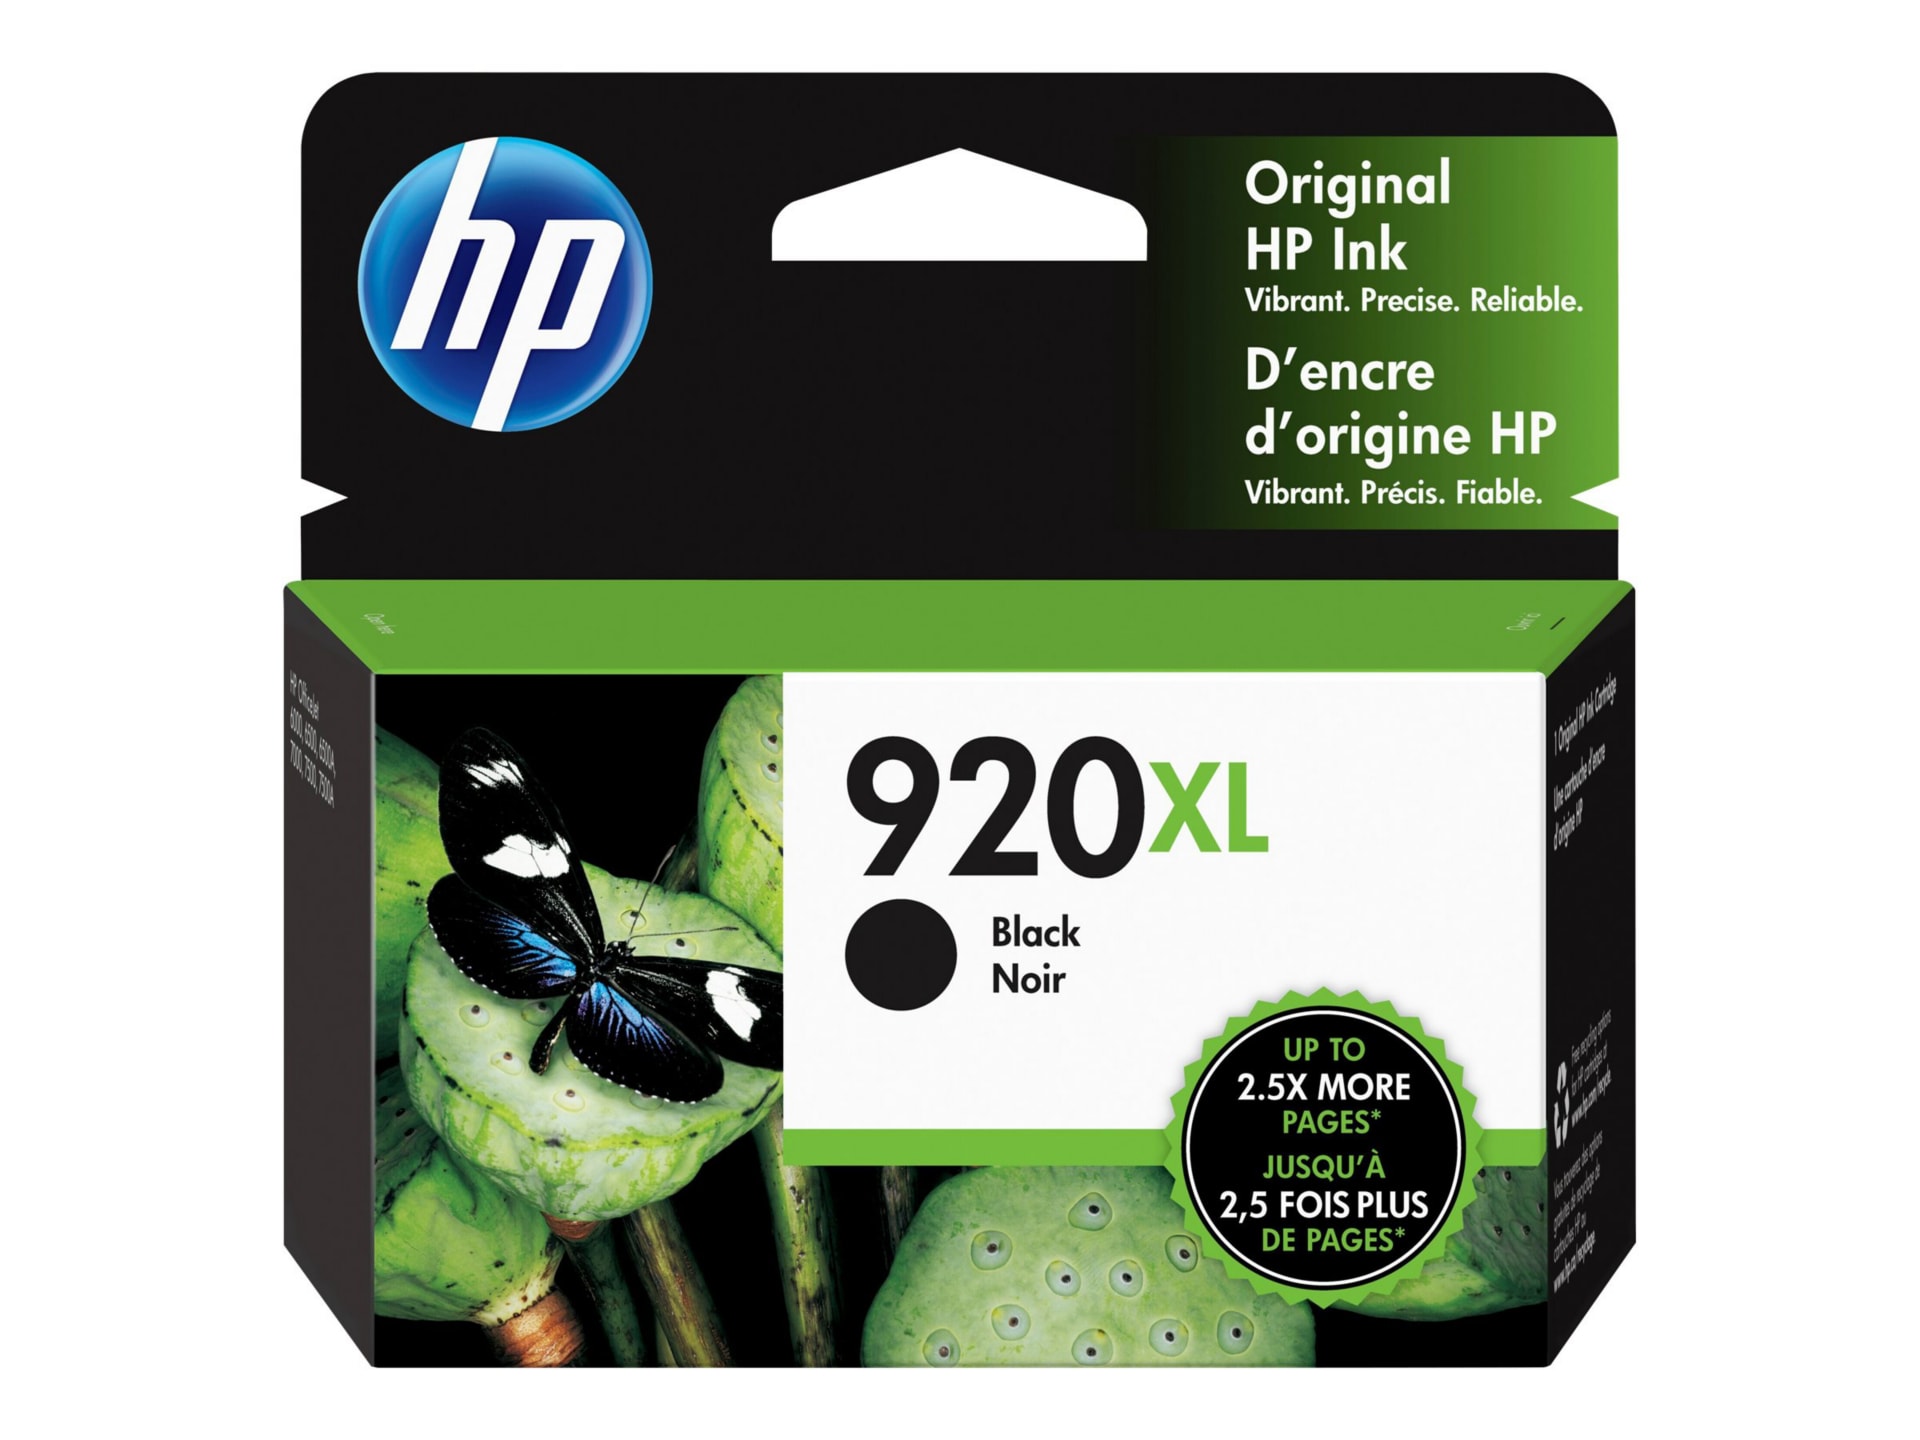 HP 920xl Black Ink Cartridge